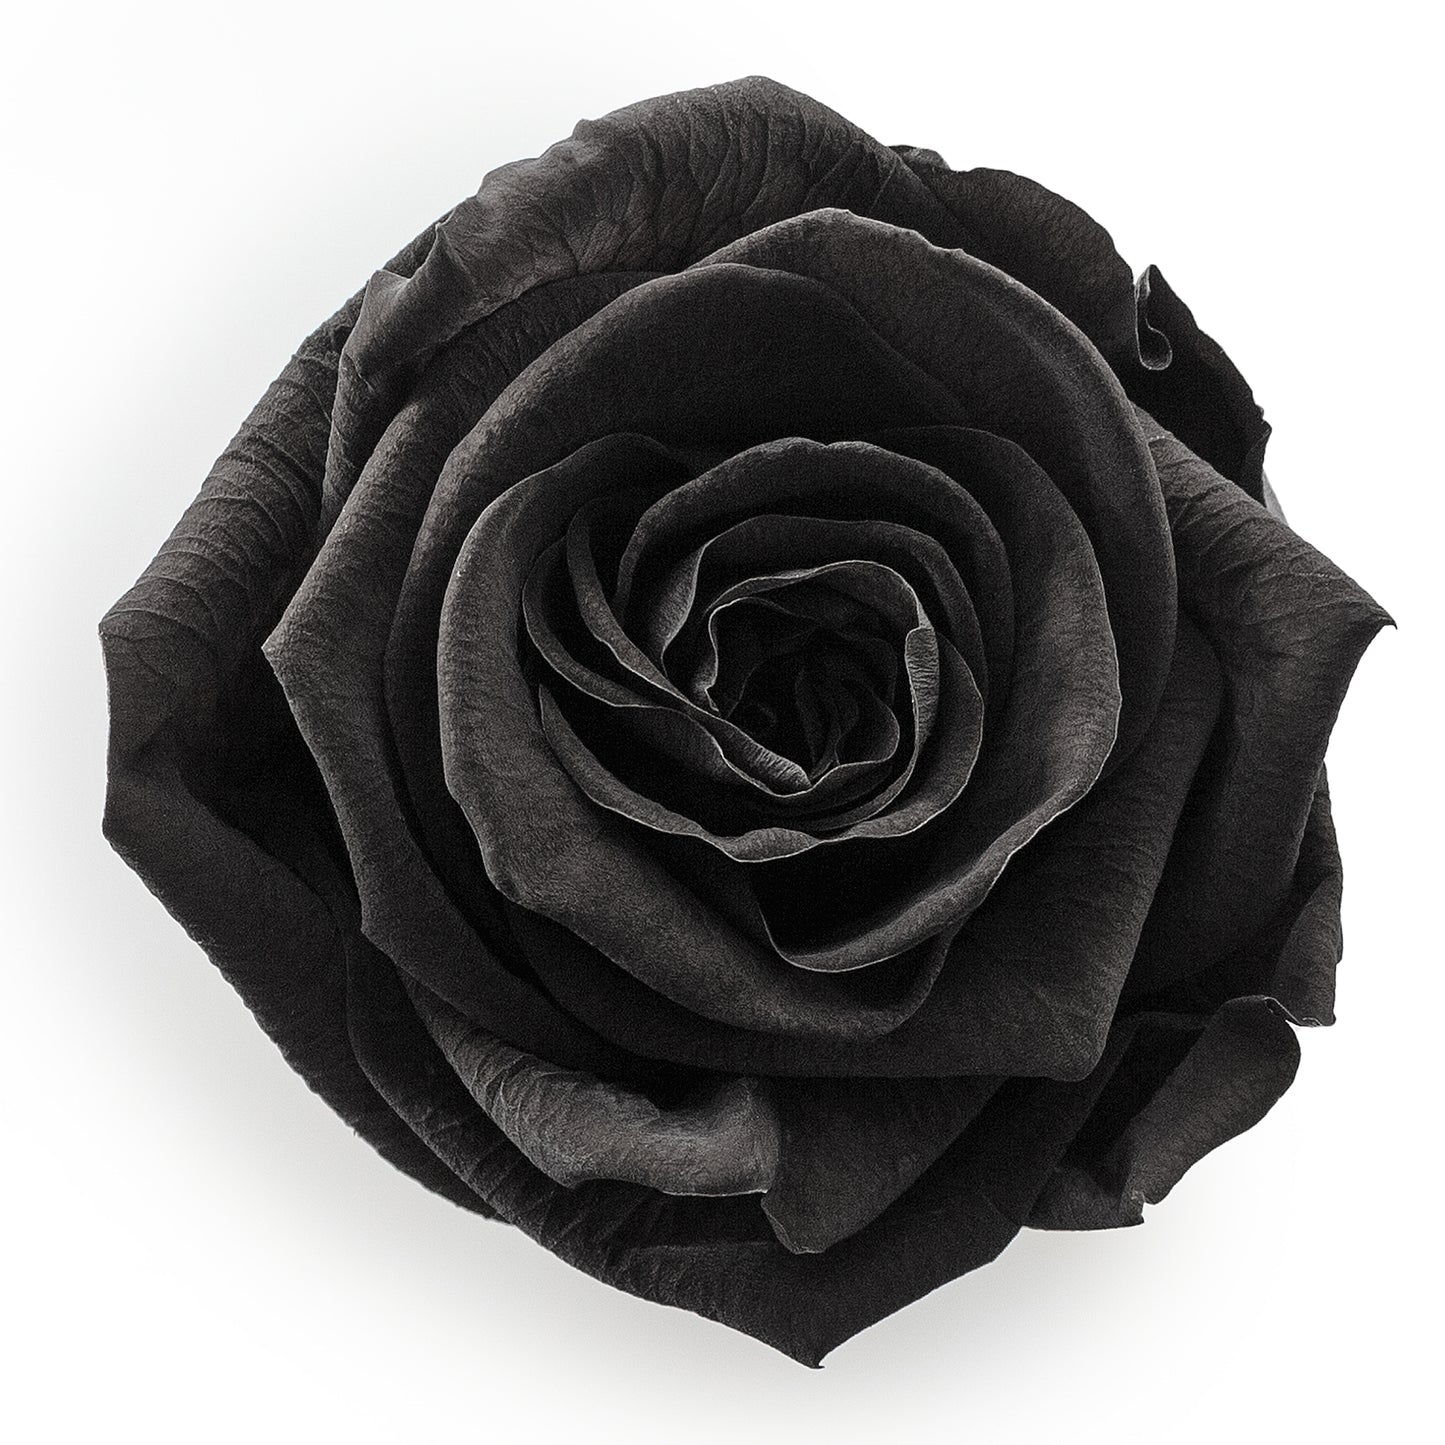 Forever Roses & S Square Black Hat Box